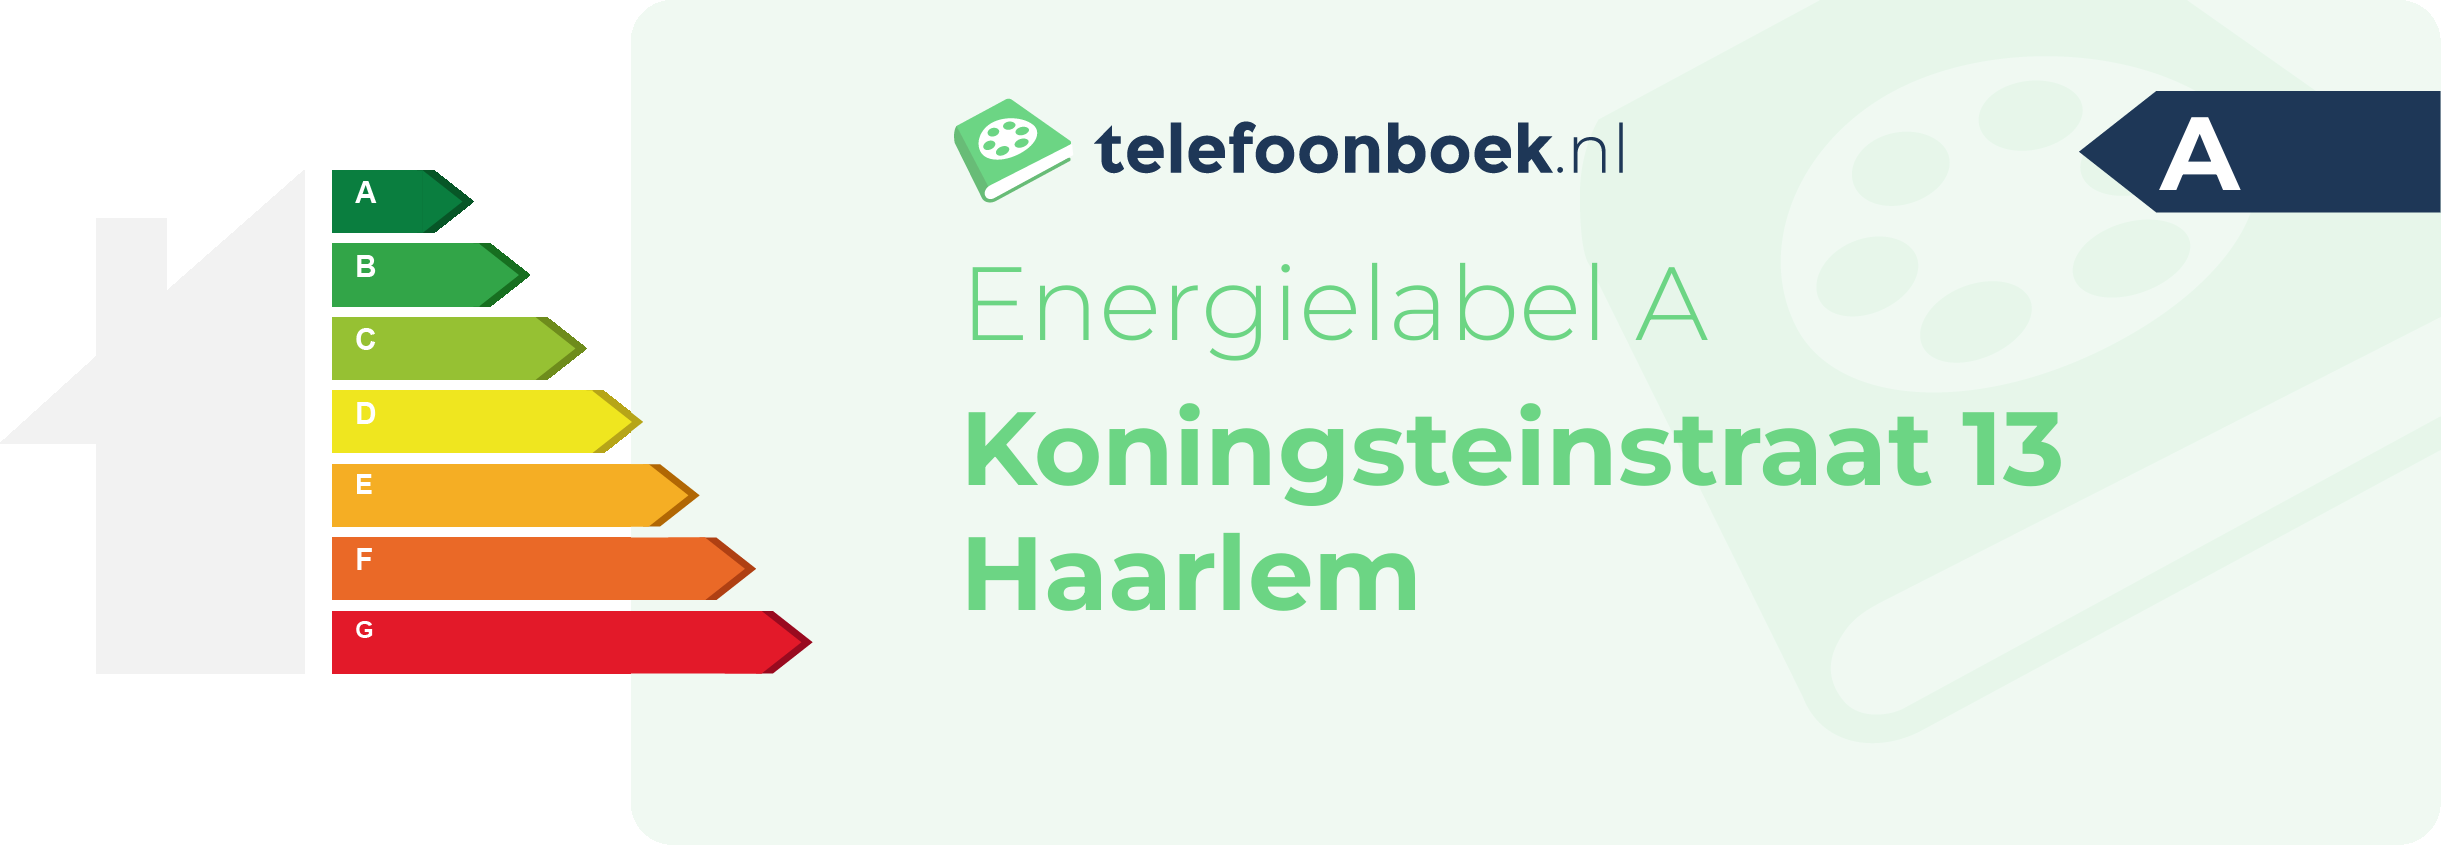 Energielabel Koningsteinstraat 13 Haarlem